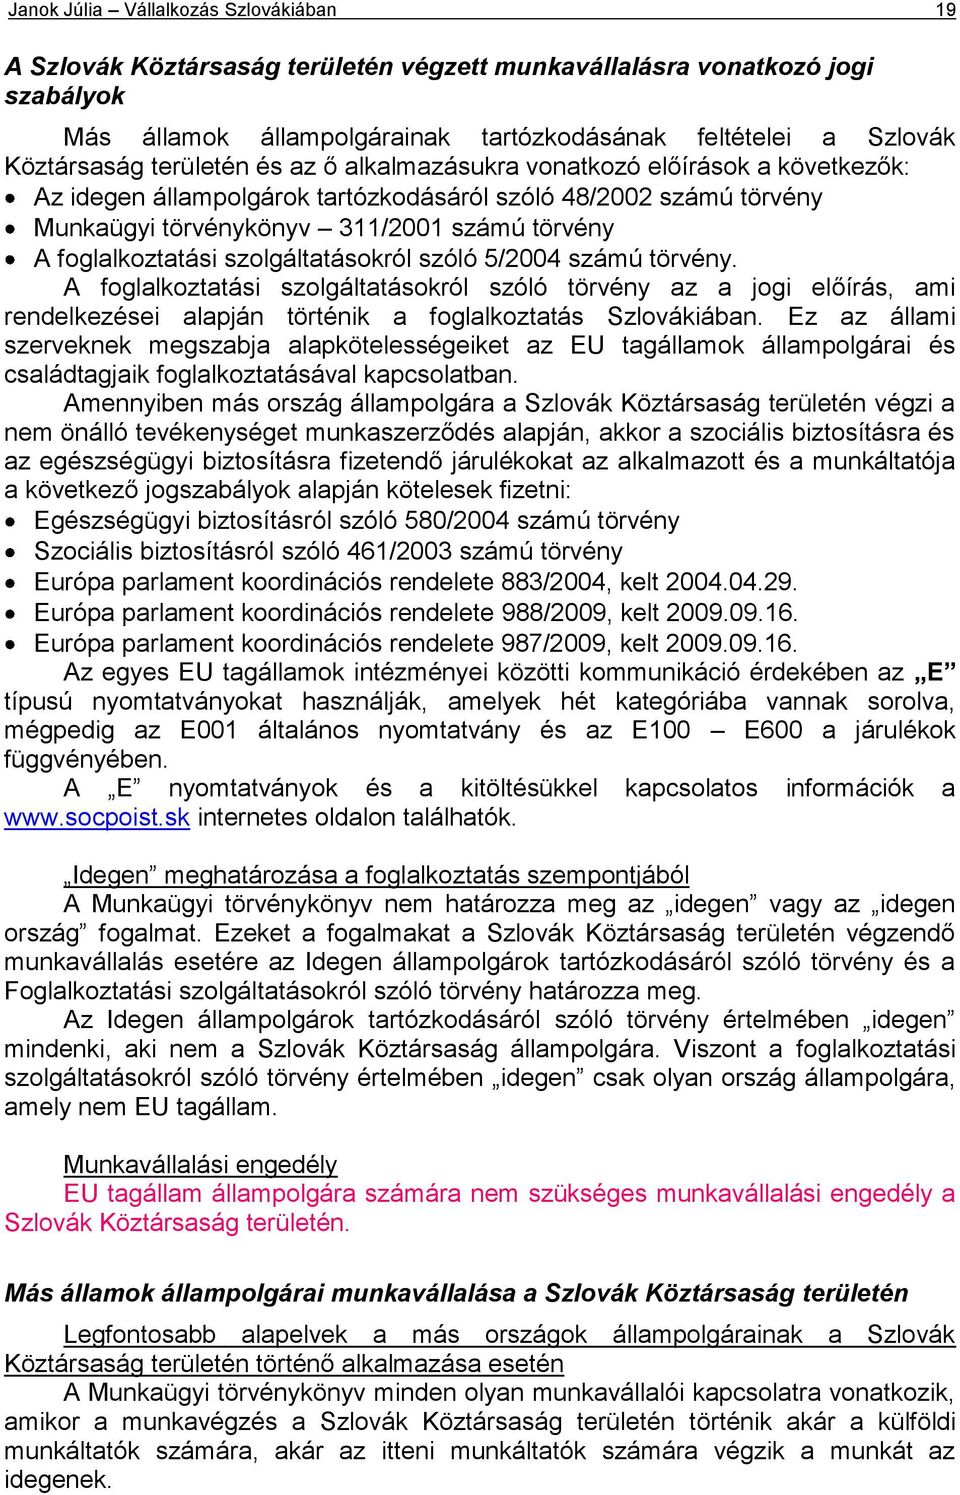 szolgáltatásokról szóló 5/2004 számú törvény. A foglalkoztatási szolgáltatásokról szóló törvény az a jogi előírás, ami rendelkezései alapján történik a foglalkoztatás Szlovákiában.